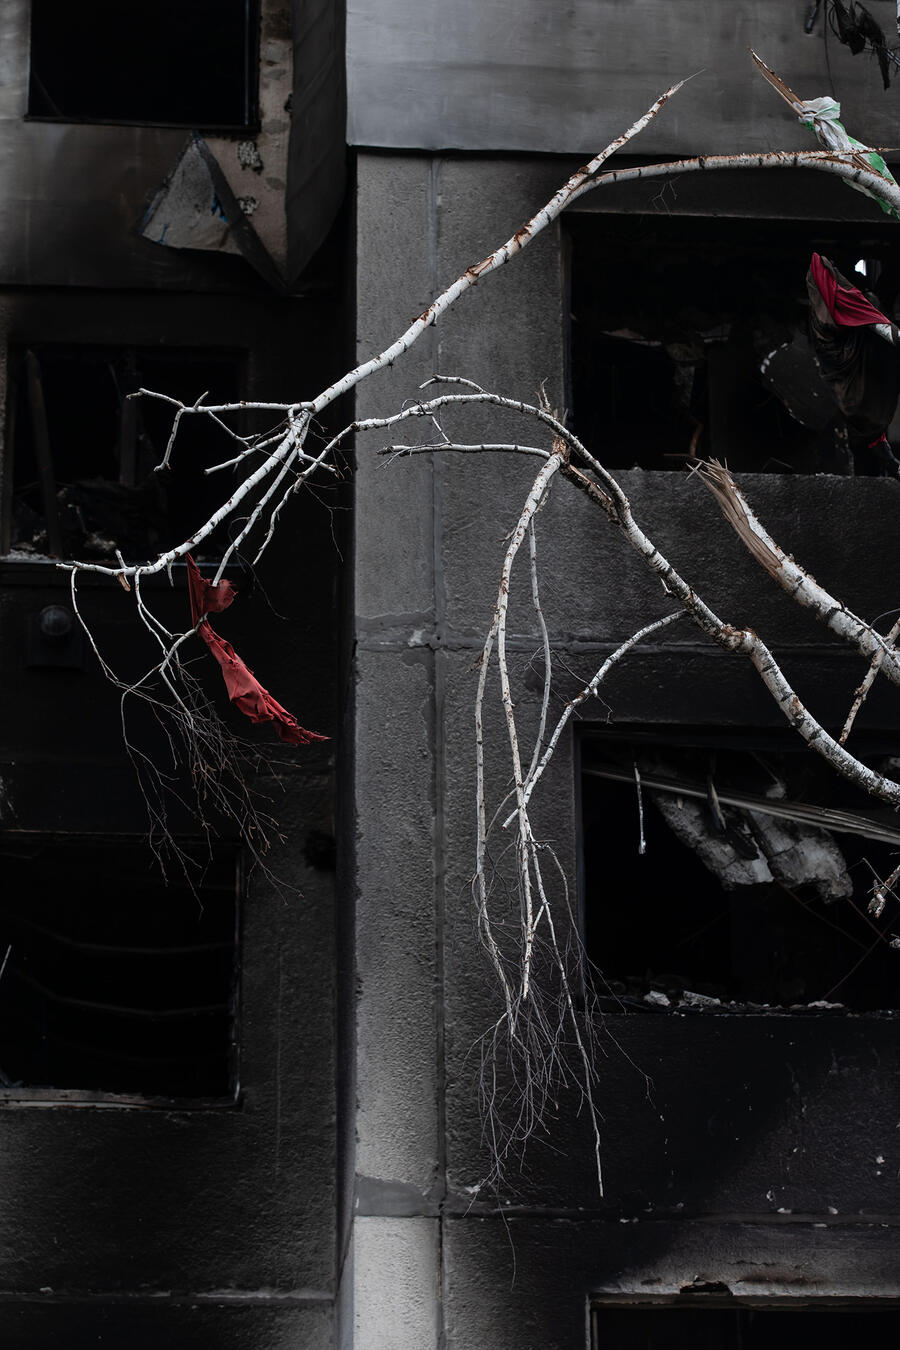 Mikhail Palinchak: Borodianka, 2022; Bild: Angebrochene Birkenäste vor einer ausgebrannten Betonfassade, am Ende eines Astes aht sich ein schmutziges rotes Tuch verfangen, Farbstimmung: dunkel, schwarz-grau dominiert